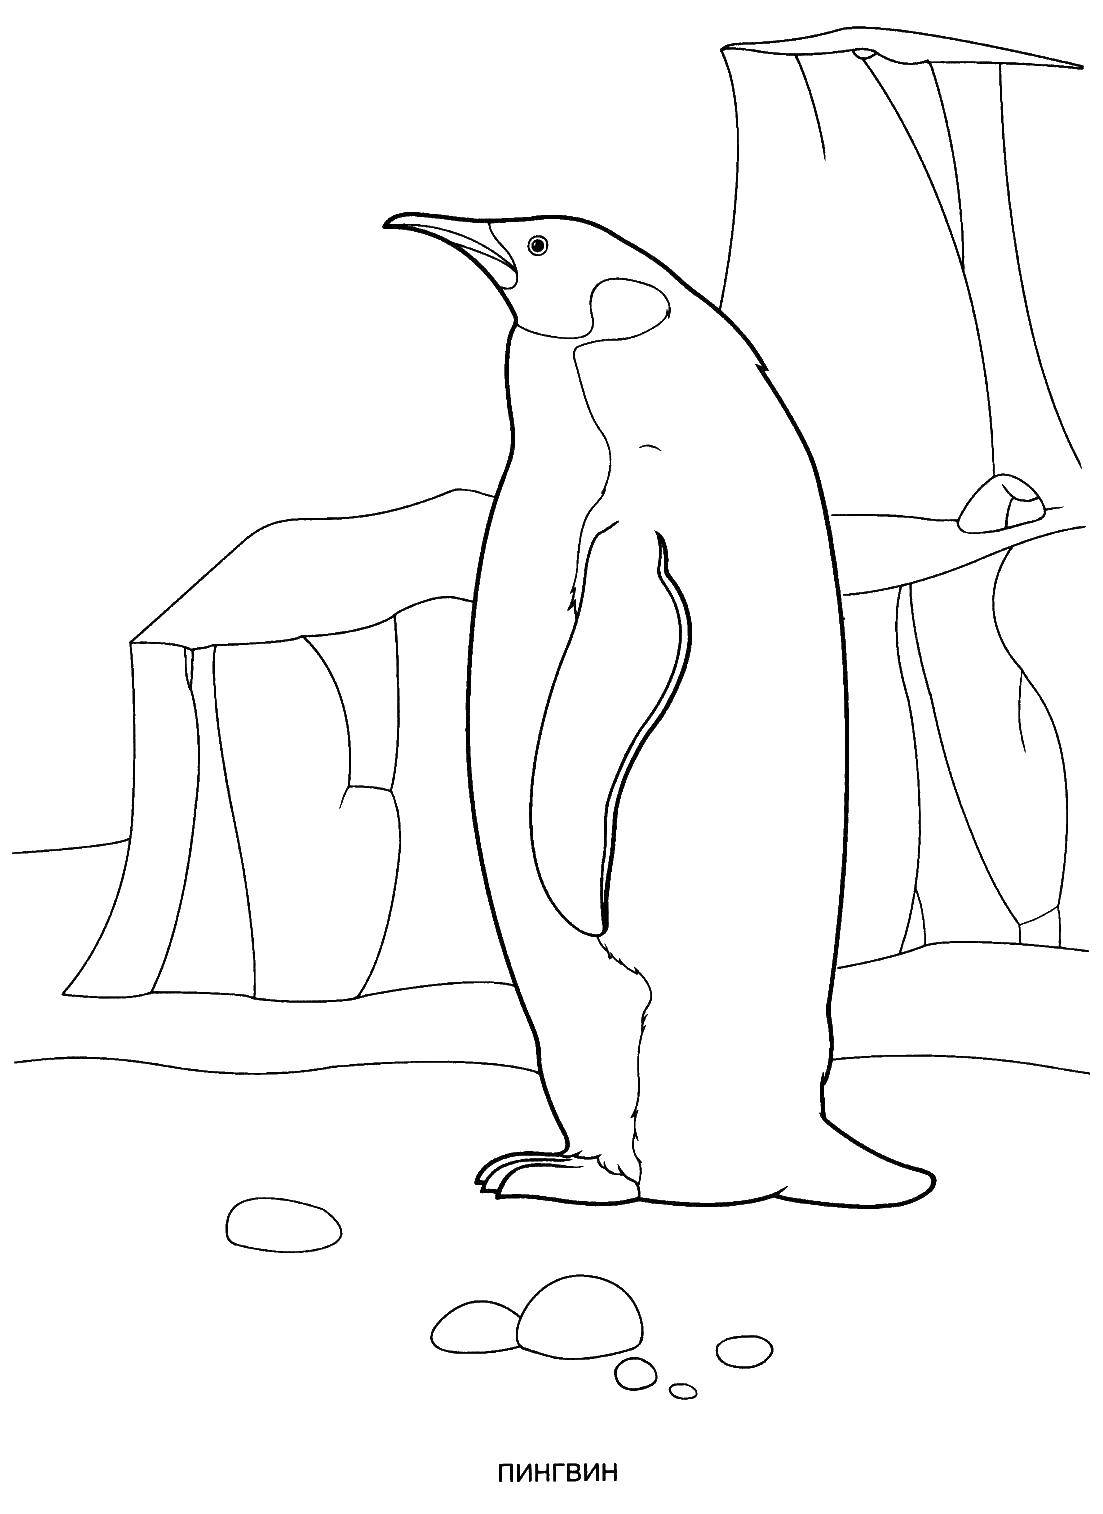   Пингвин у льдины